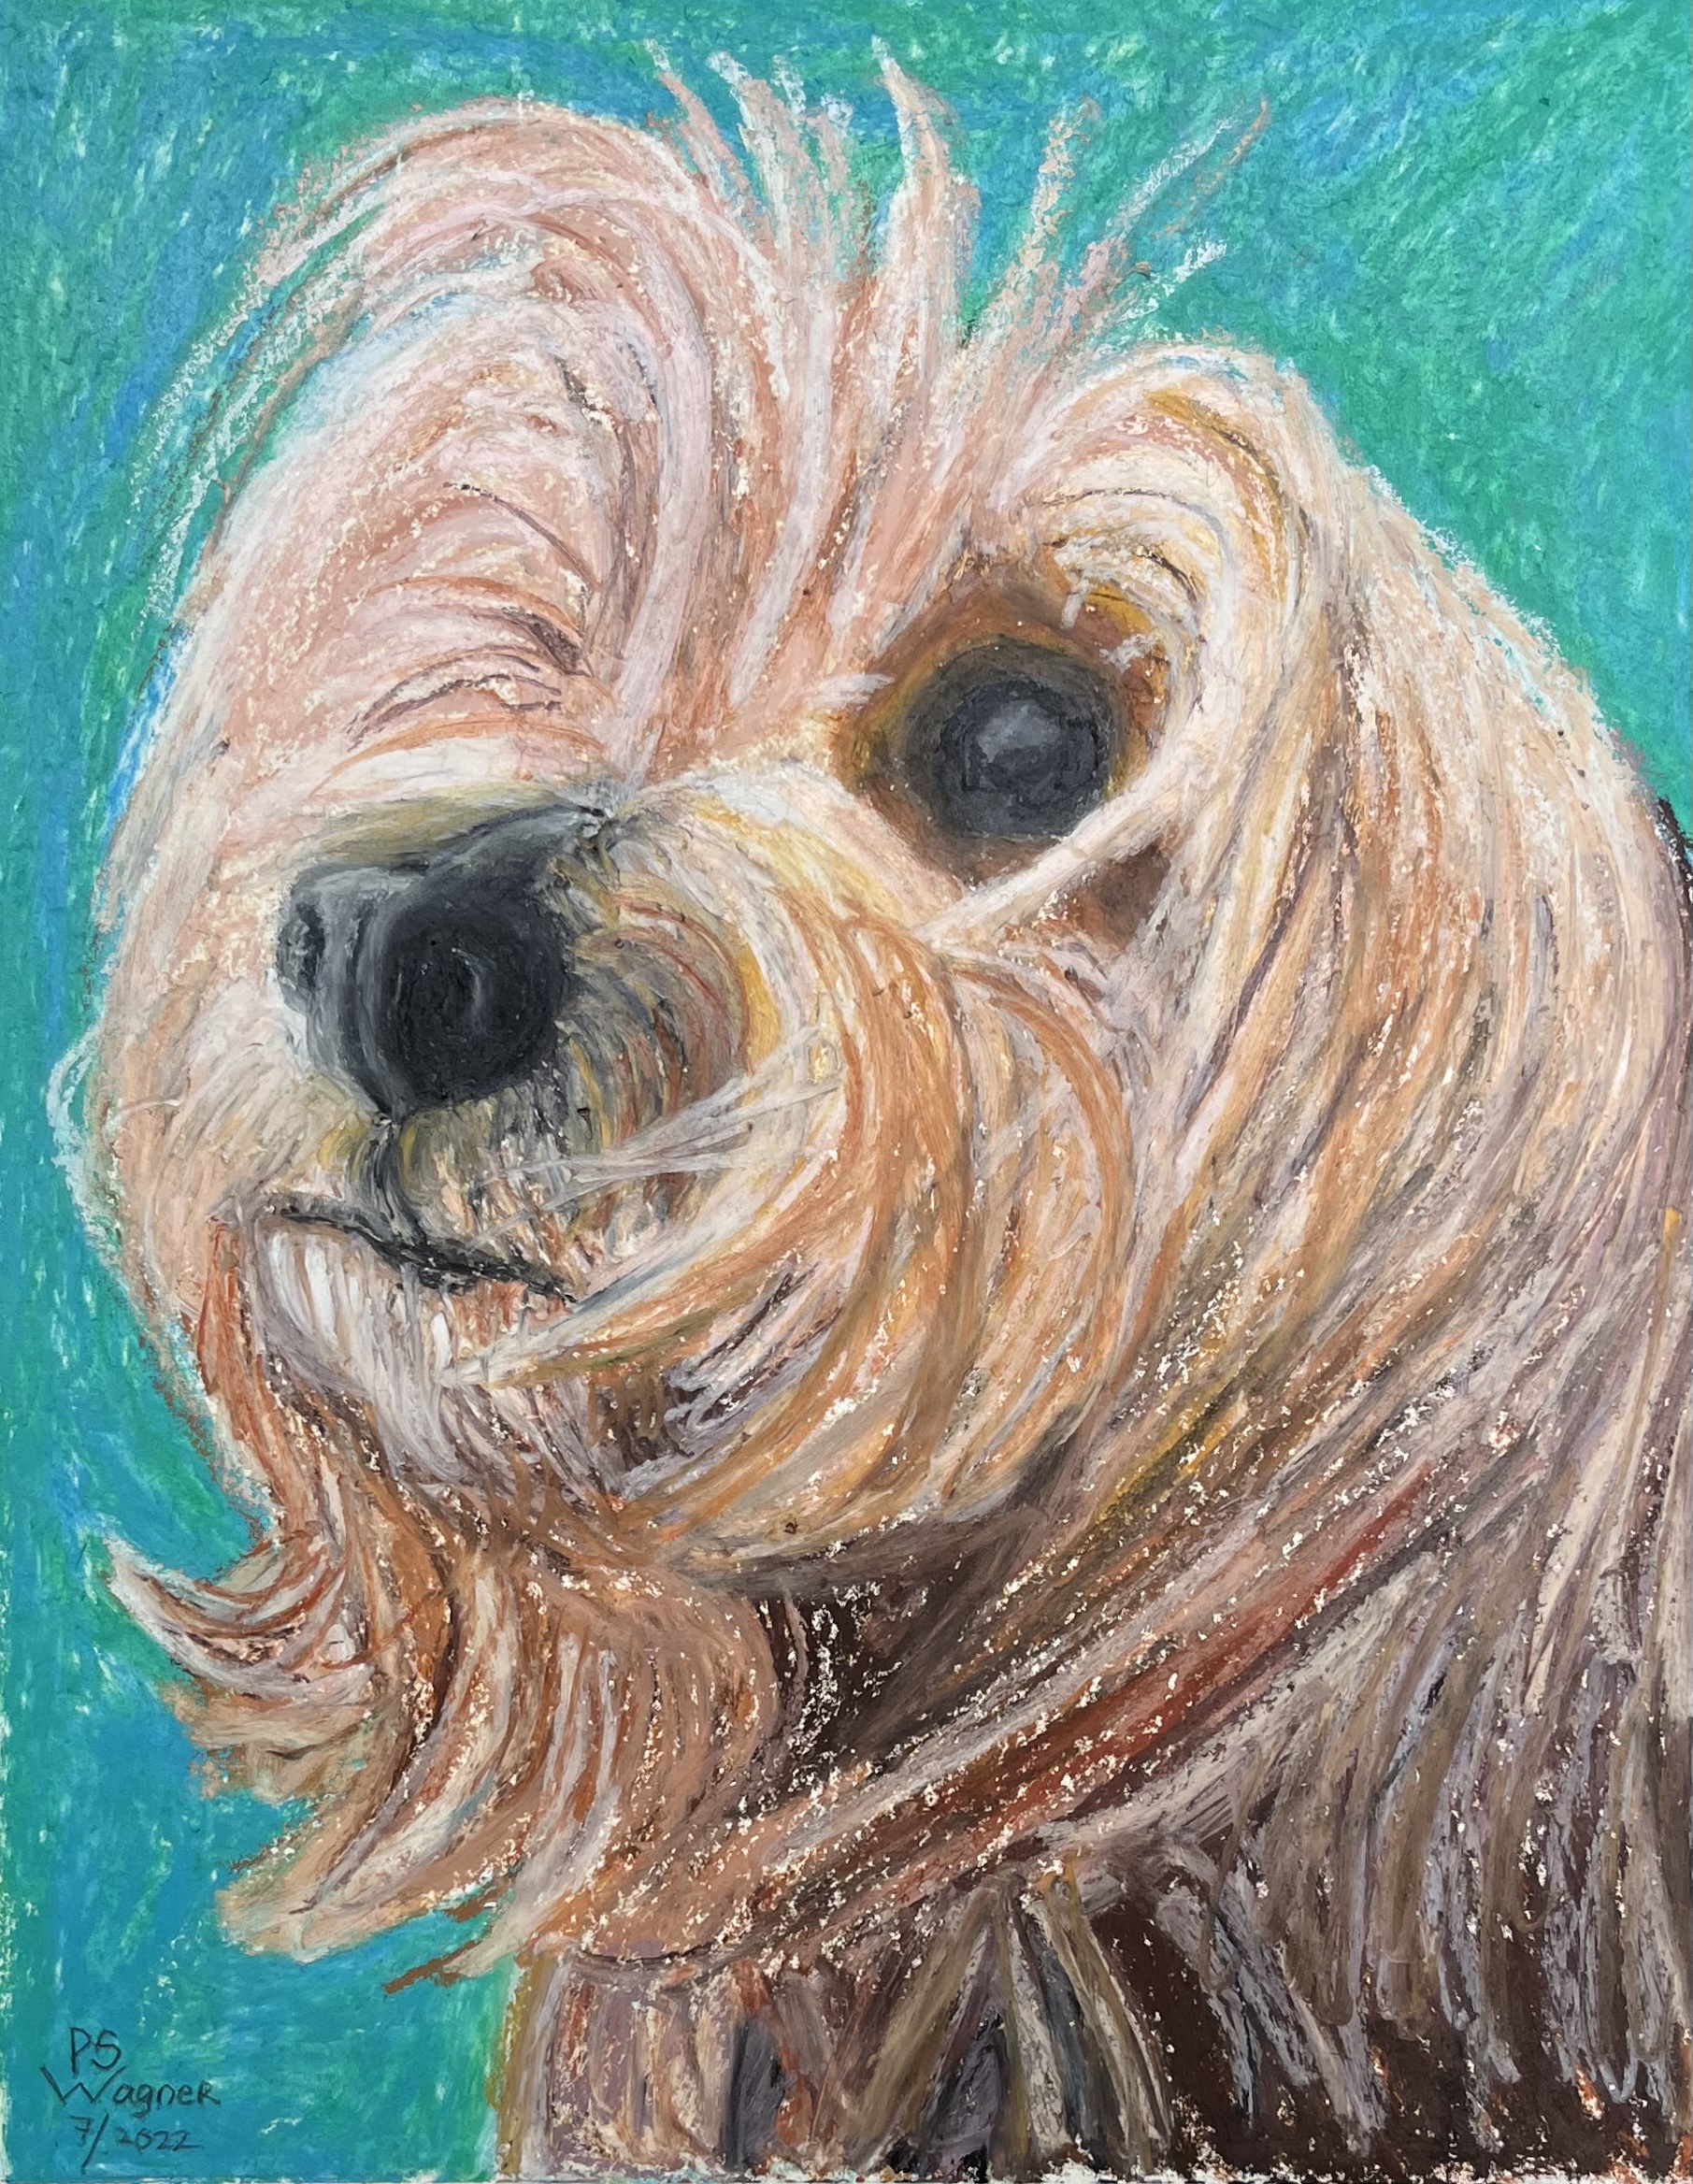 Belle, a dog portrait